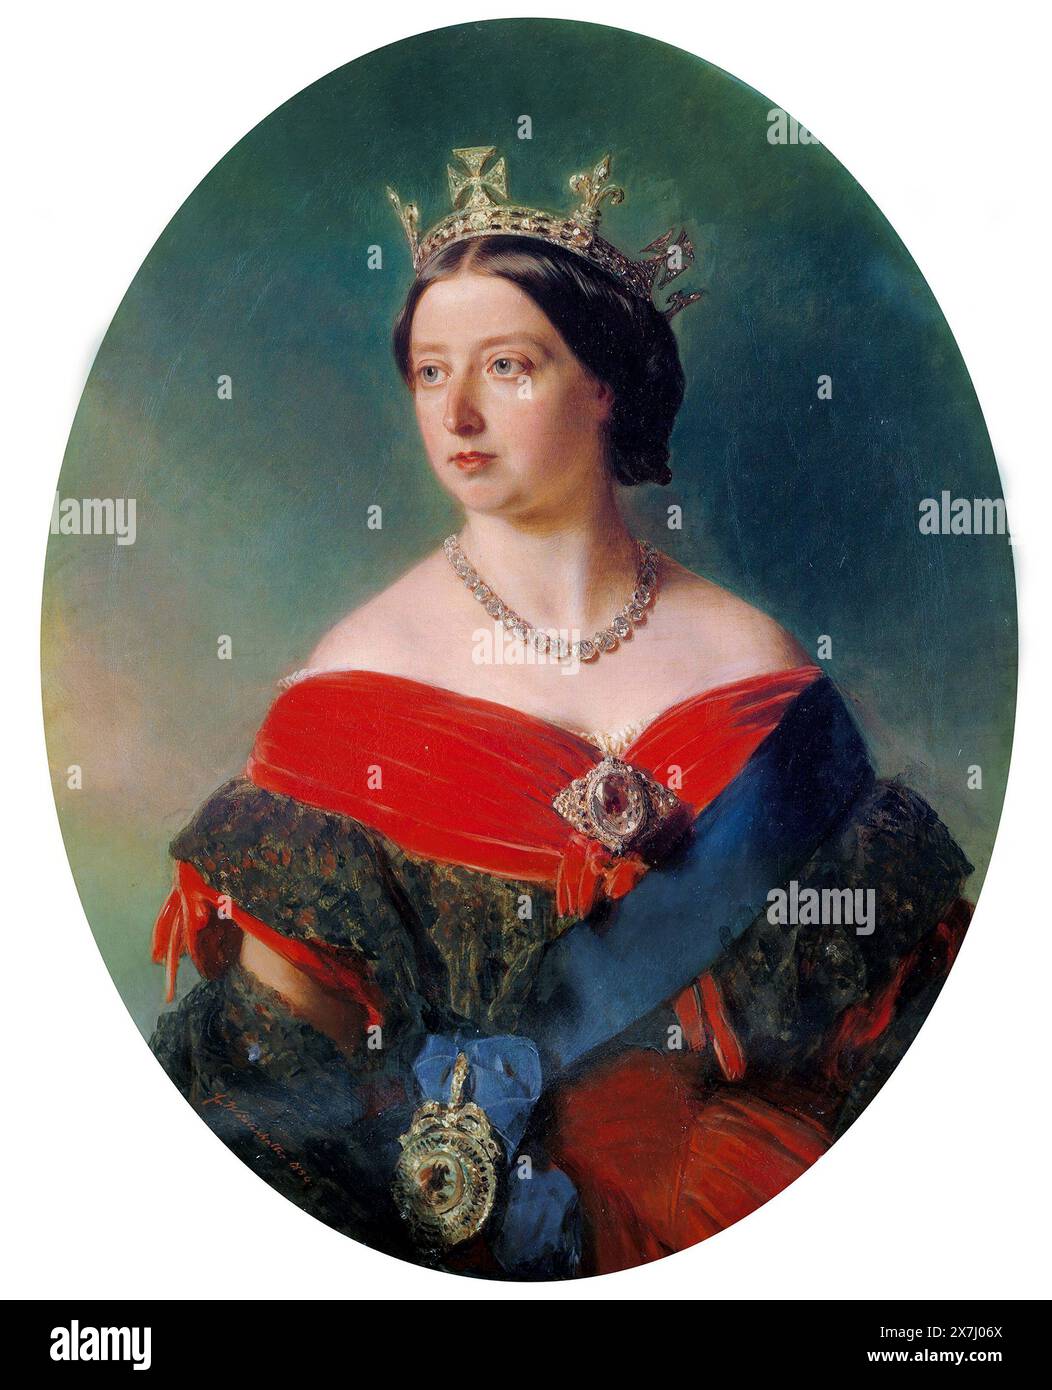 Koh-i-Noor Diamond. Portrait de la reine Victoria portant la broche koh-i-noor, tableau de Franz Xaver Winterhalter, 1856. Le diamant est actuellement monté dans la couronne de la reine Elizabeth la reine mère. Banque D'Images